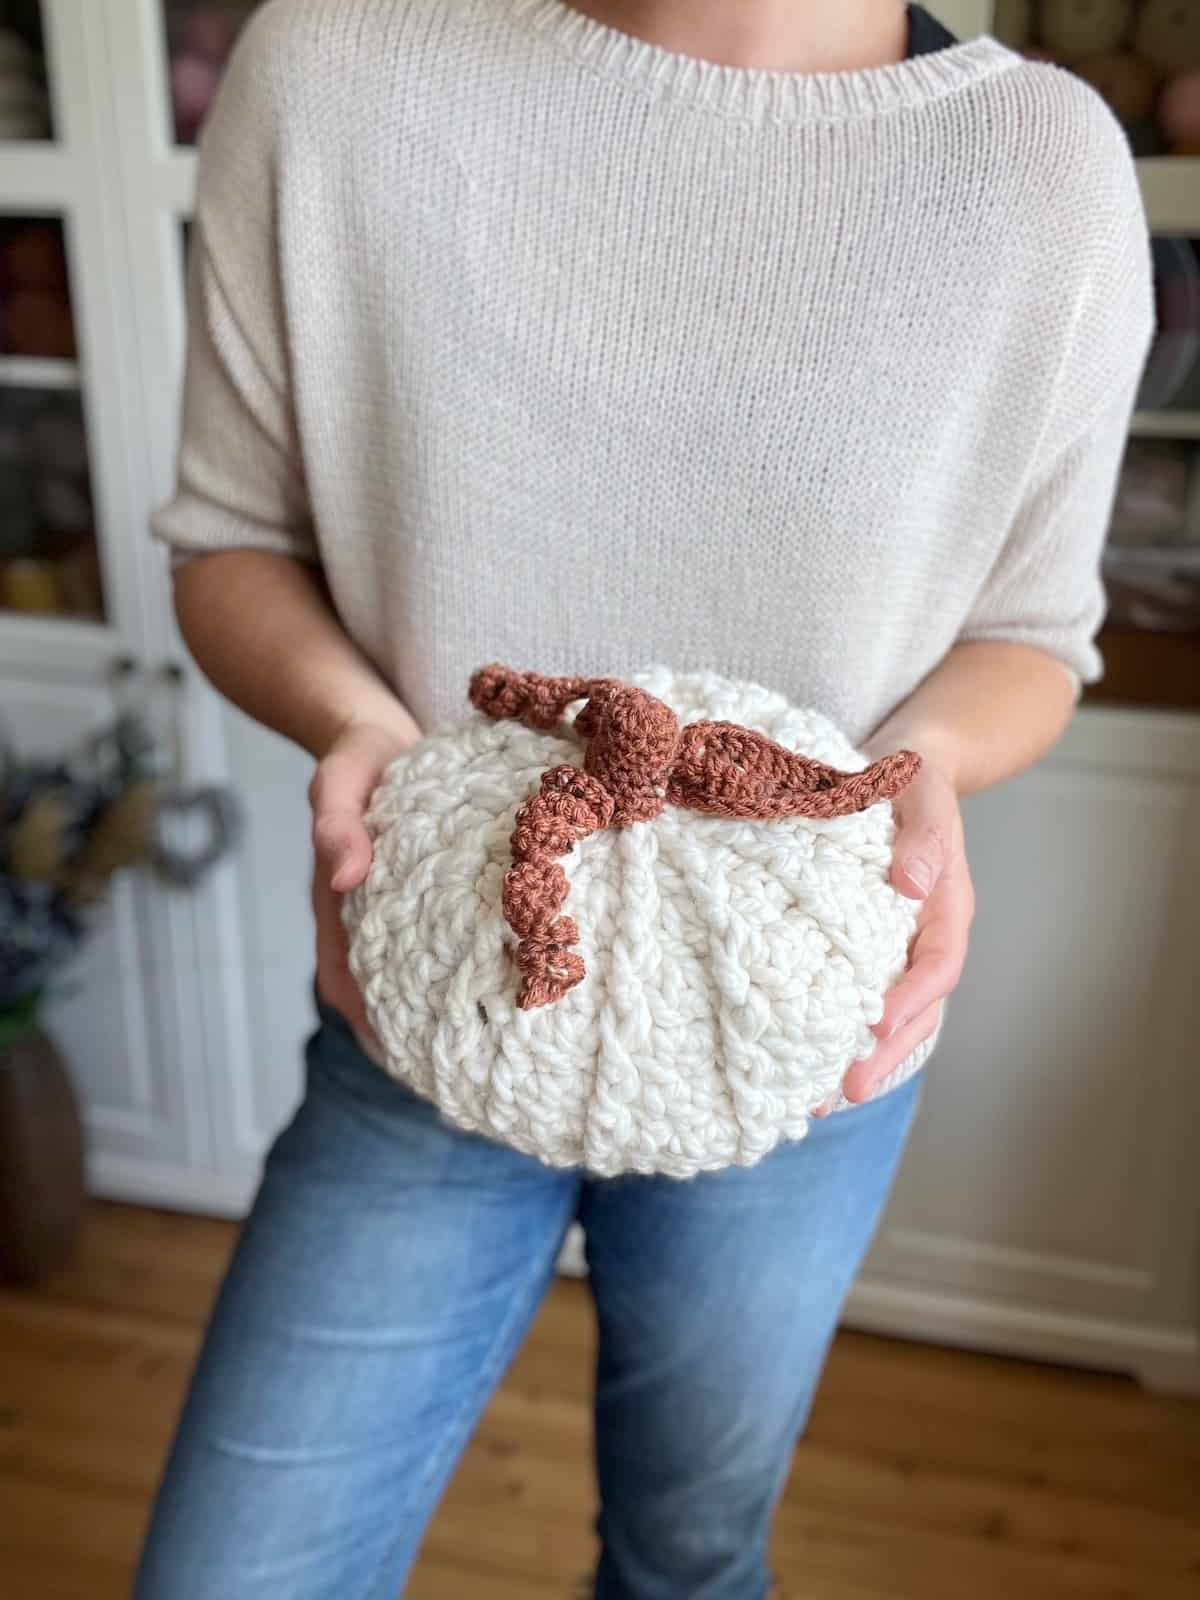 A woman holding a crocheted pumpkin.